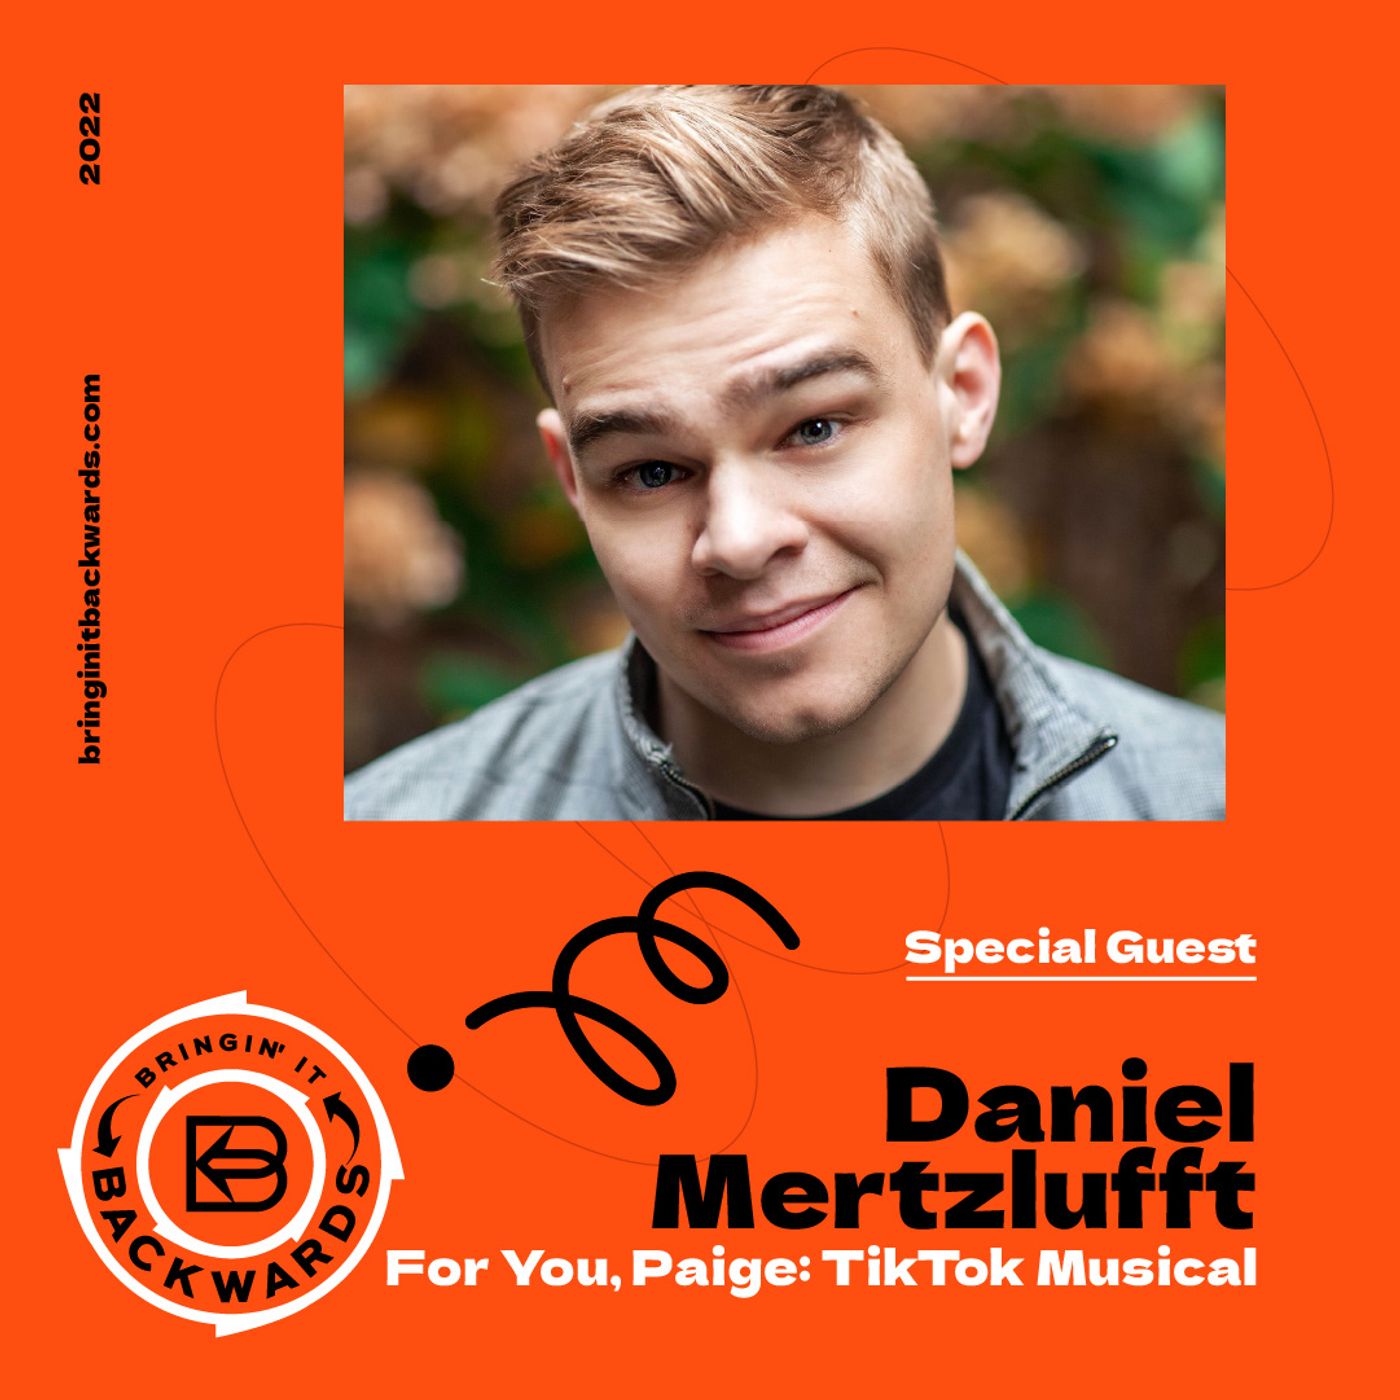 Interview with Daniel Mertzlufft (TikTok Musical)